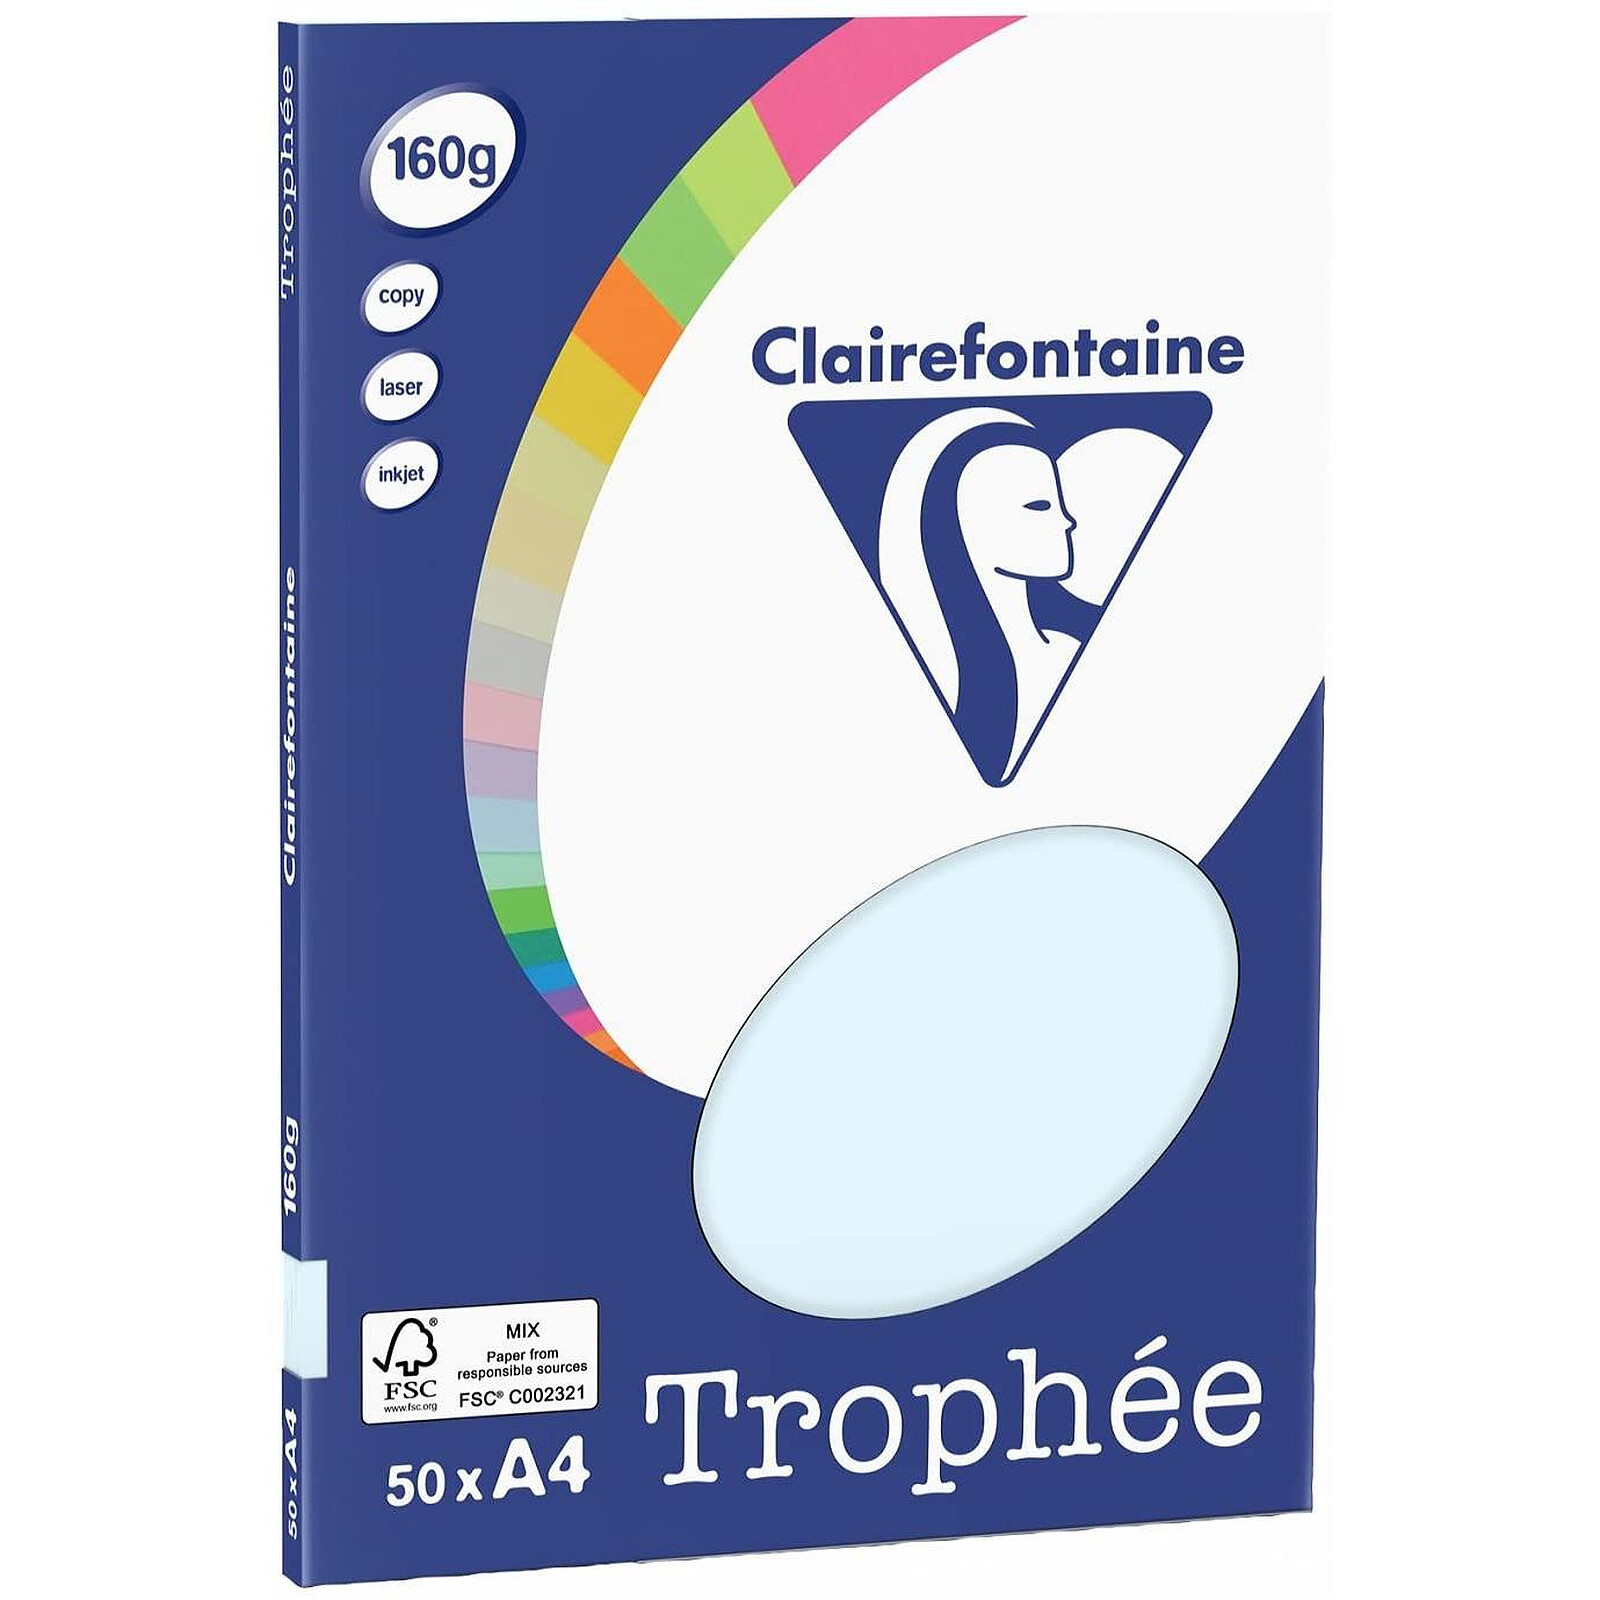 Clairefontaine Equality ramette 500 feuilles A4 80g 161CIE X5 - Ramette de  papier - LDLC